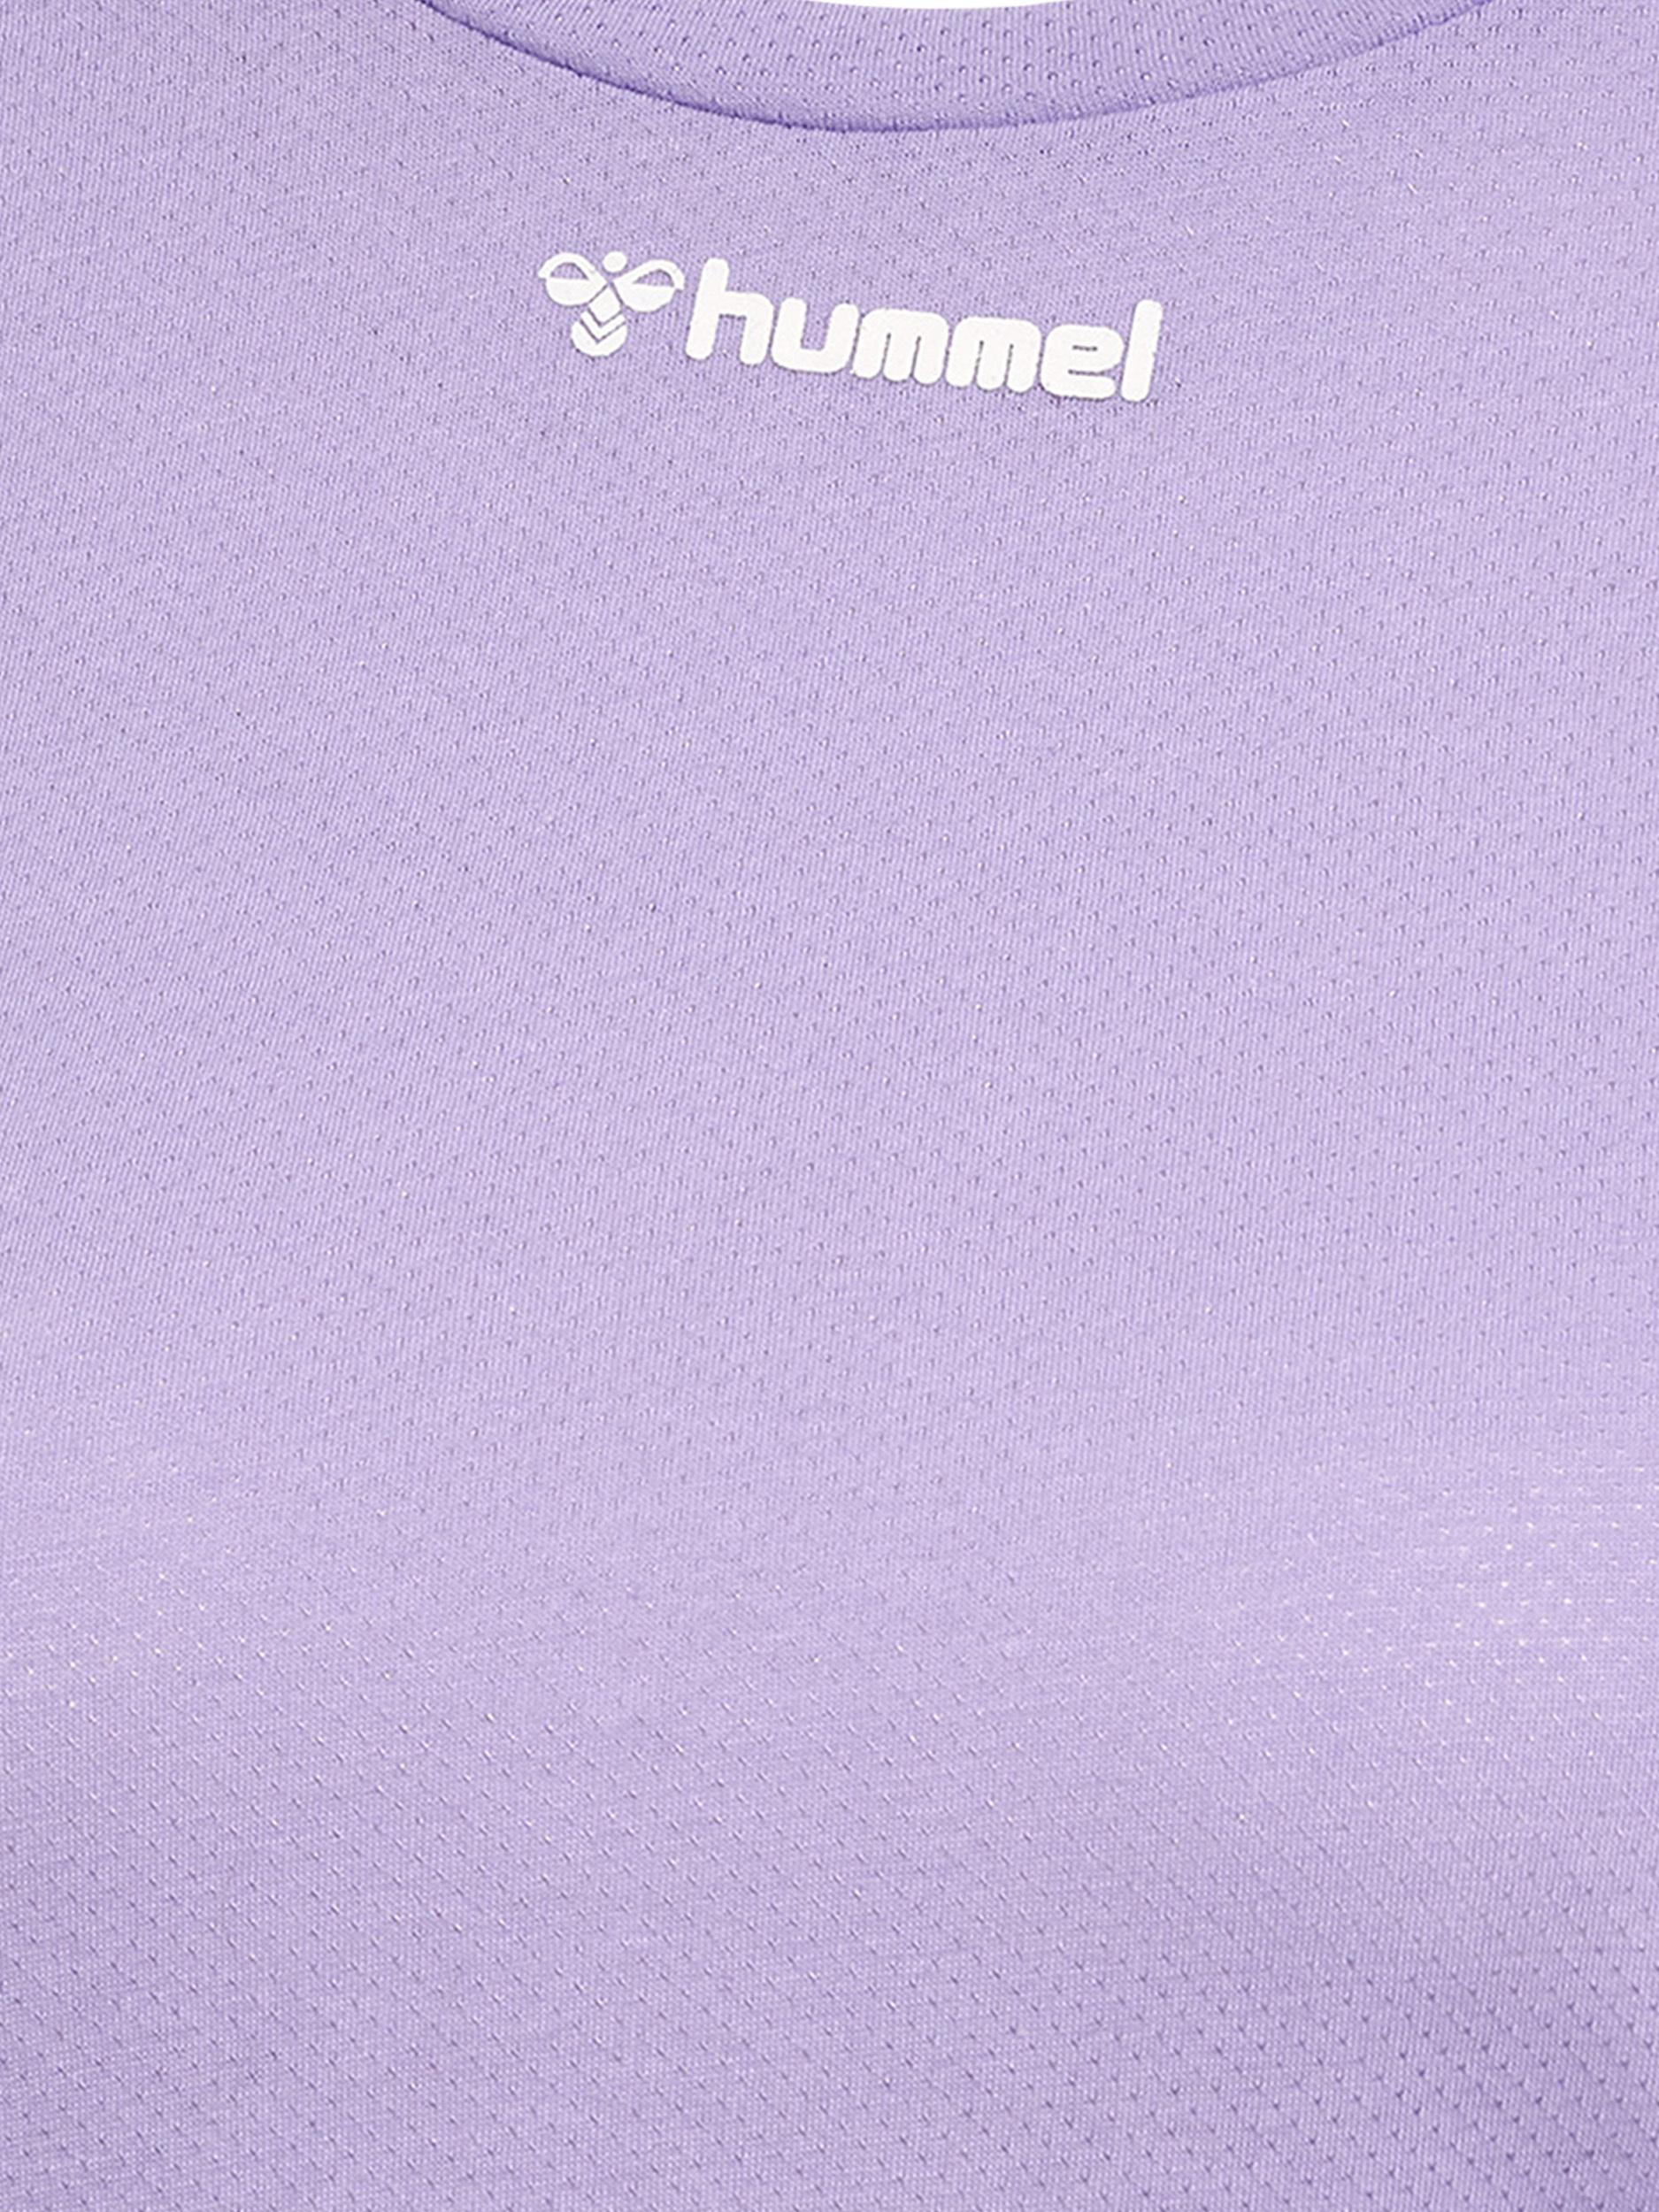 Damen T-Shirt Hummel kaufen T-SHIRT SportScheck im von Shop VANJA hmlMT L/S Online LAVENDER